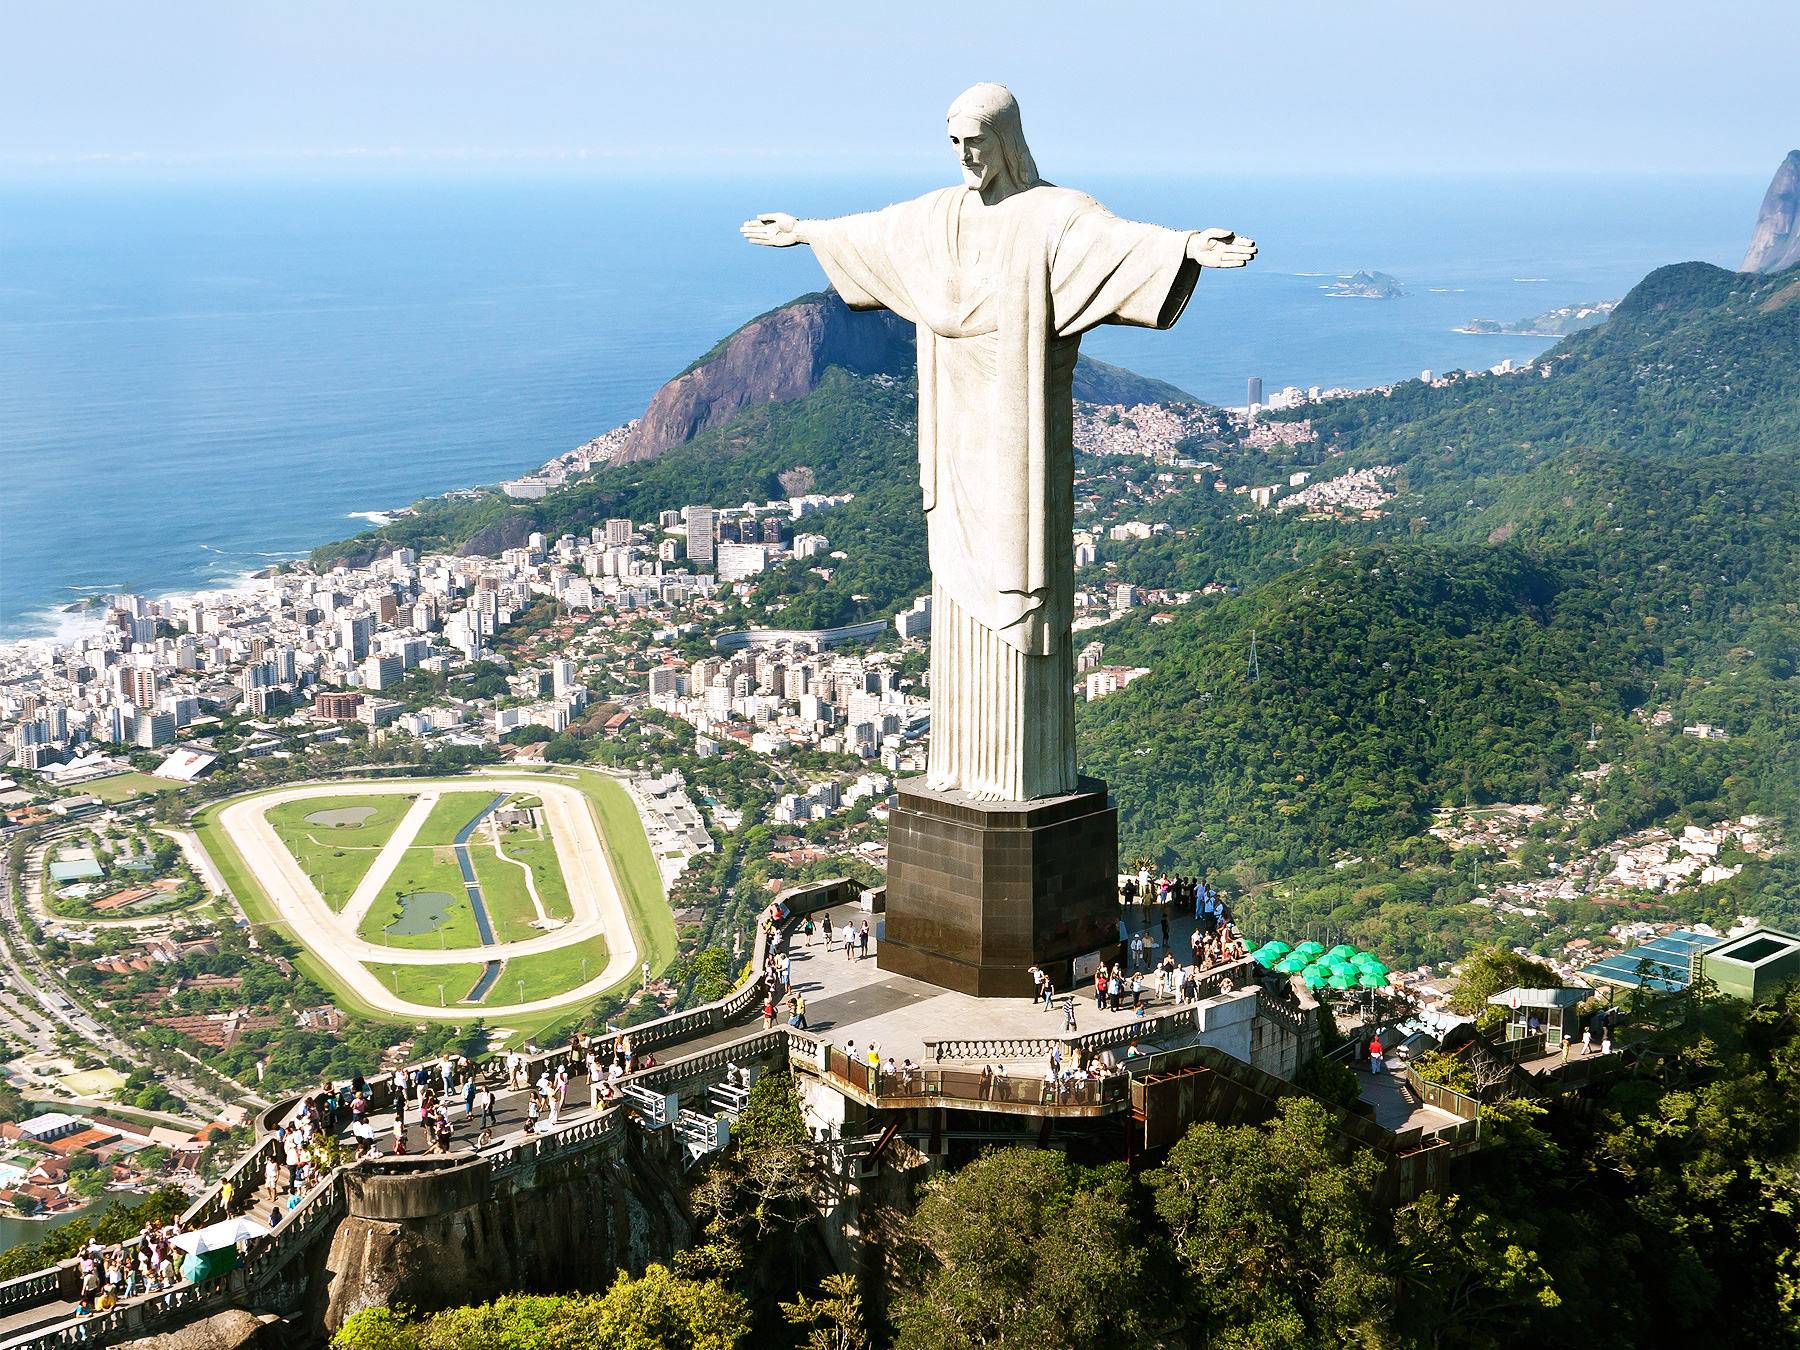 Vacances au Brésil : Circuit dans le Sud du Brésil